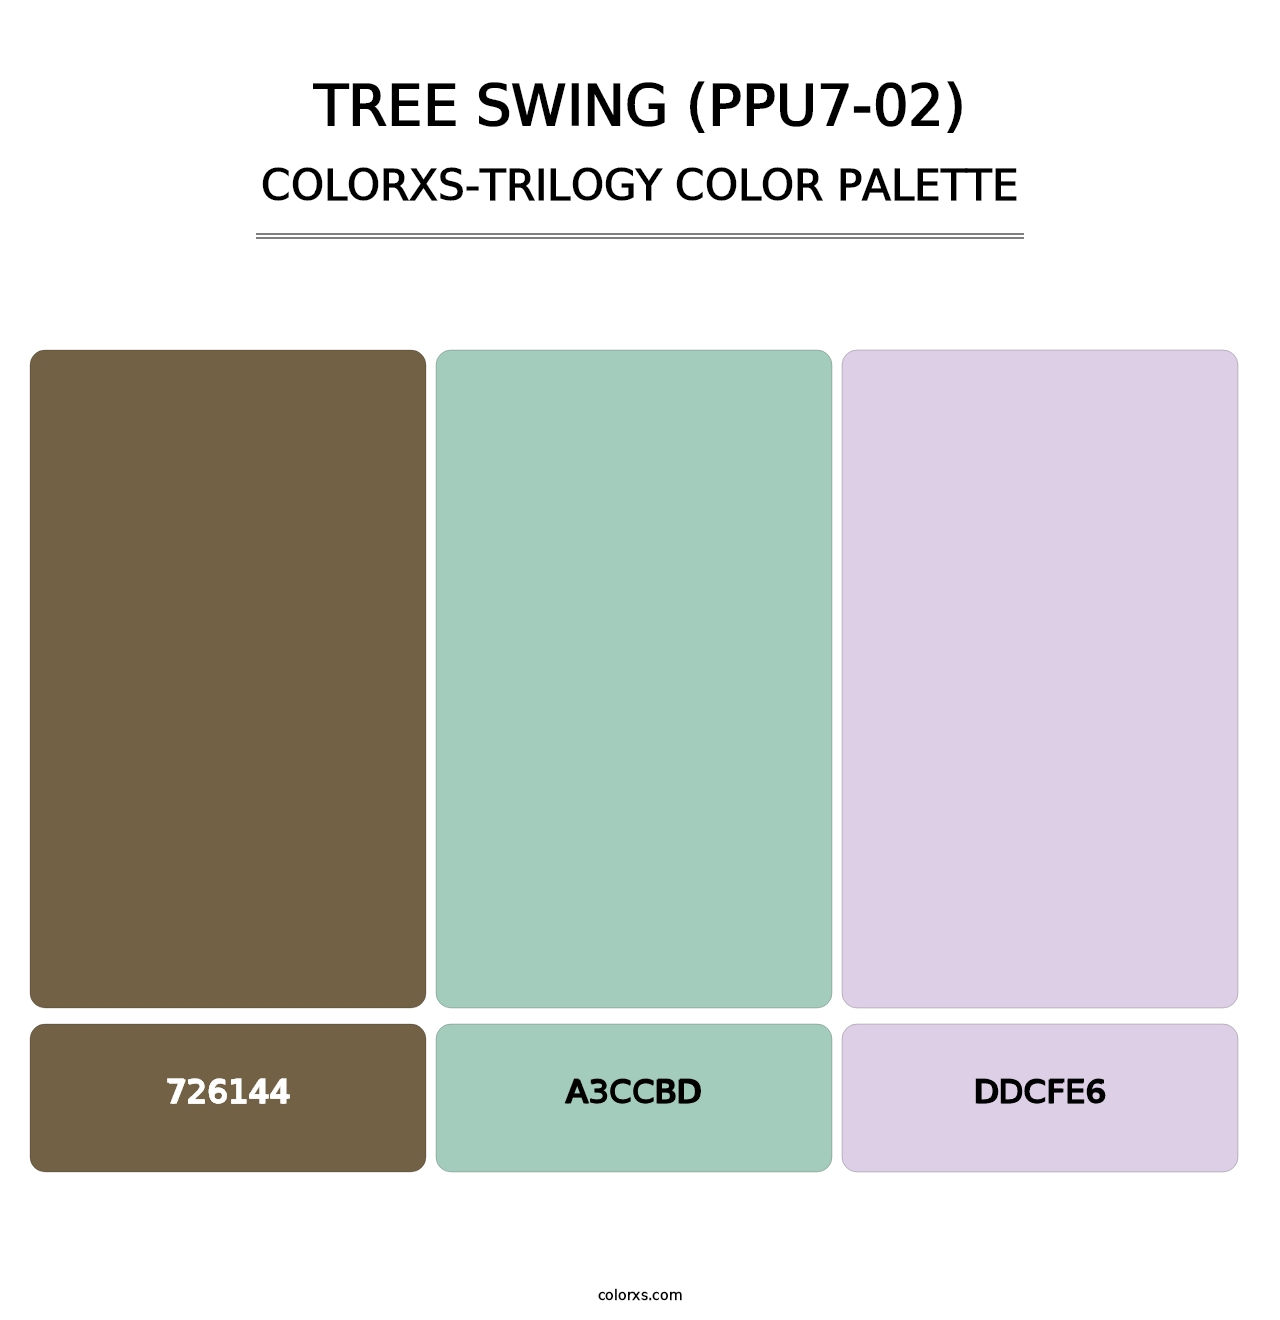 Tree Swing (PPU7-02) - Colorxs Trilogy Palette